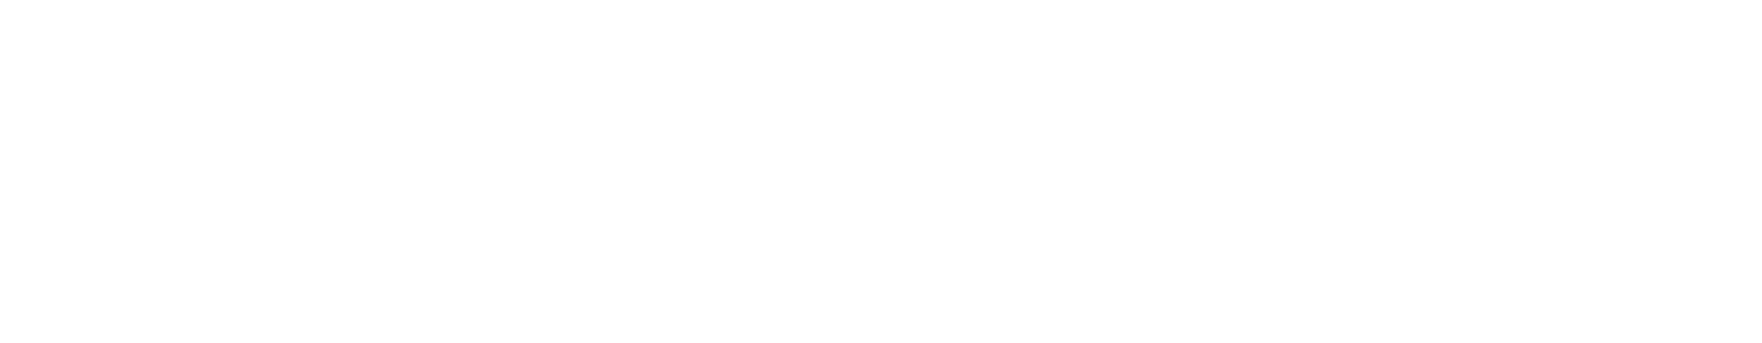 Web-Byg logo hvid